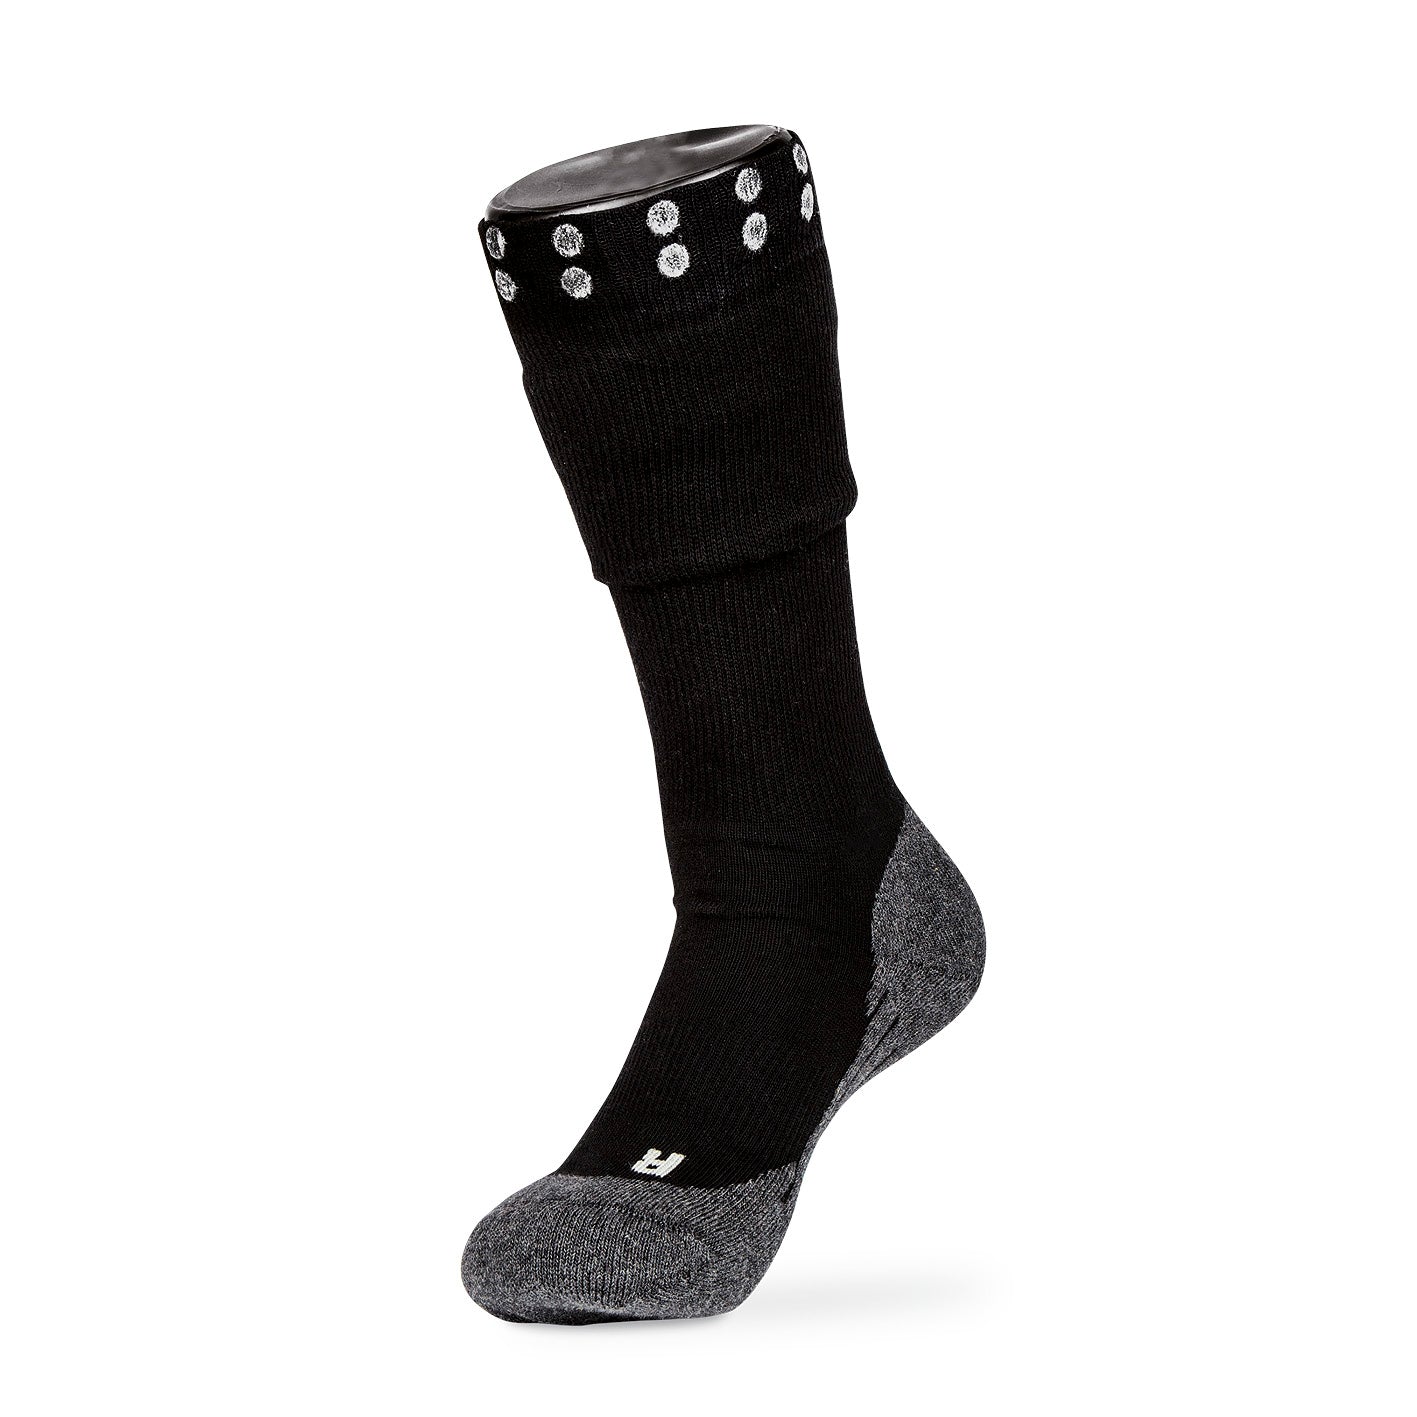 Funktions-Socke mit Doppelschaft - Größe 40-43